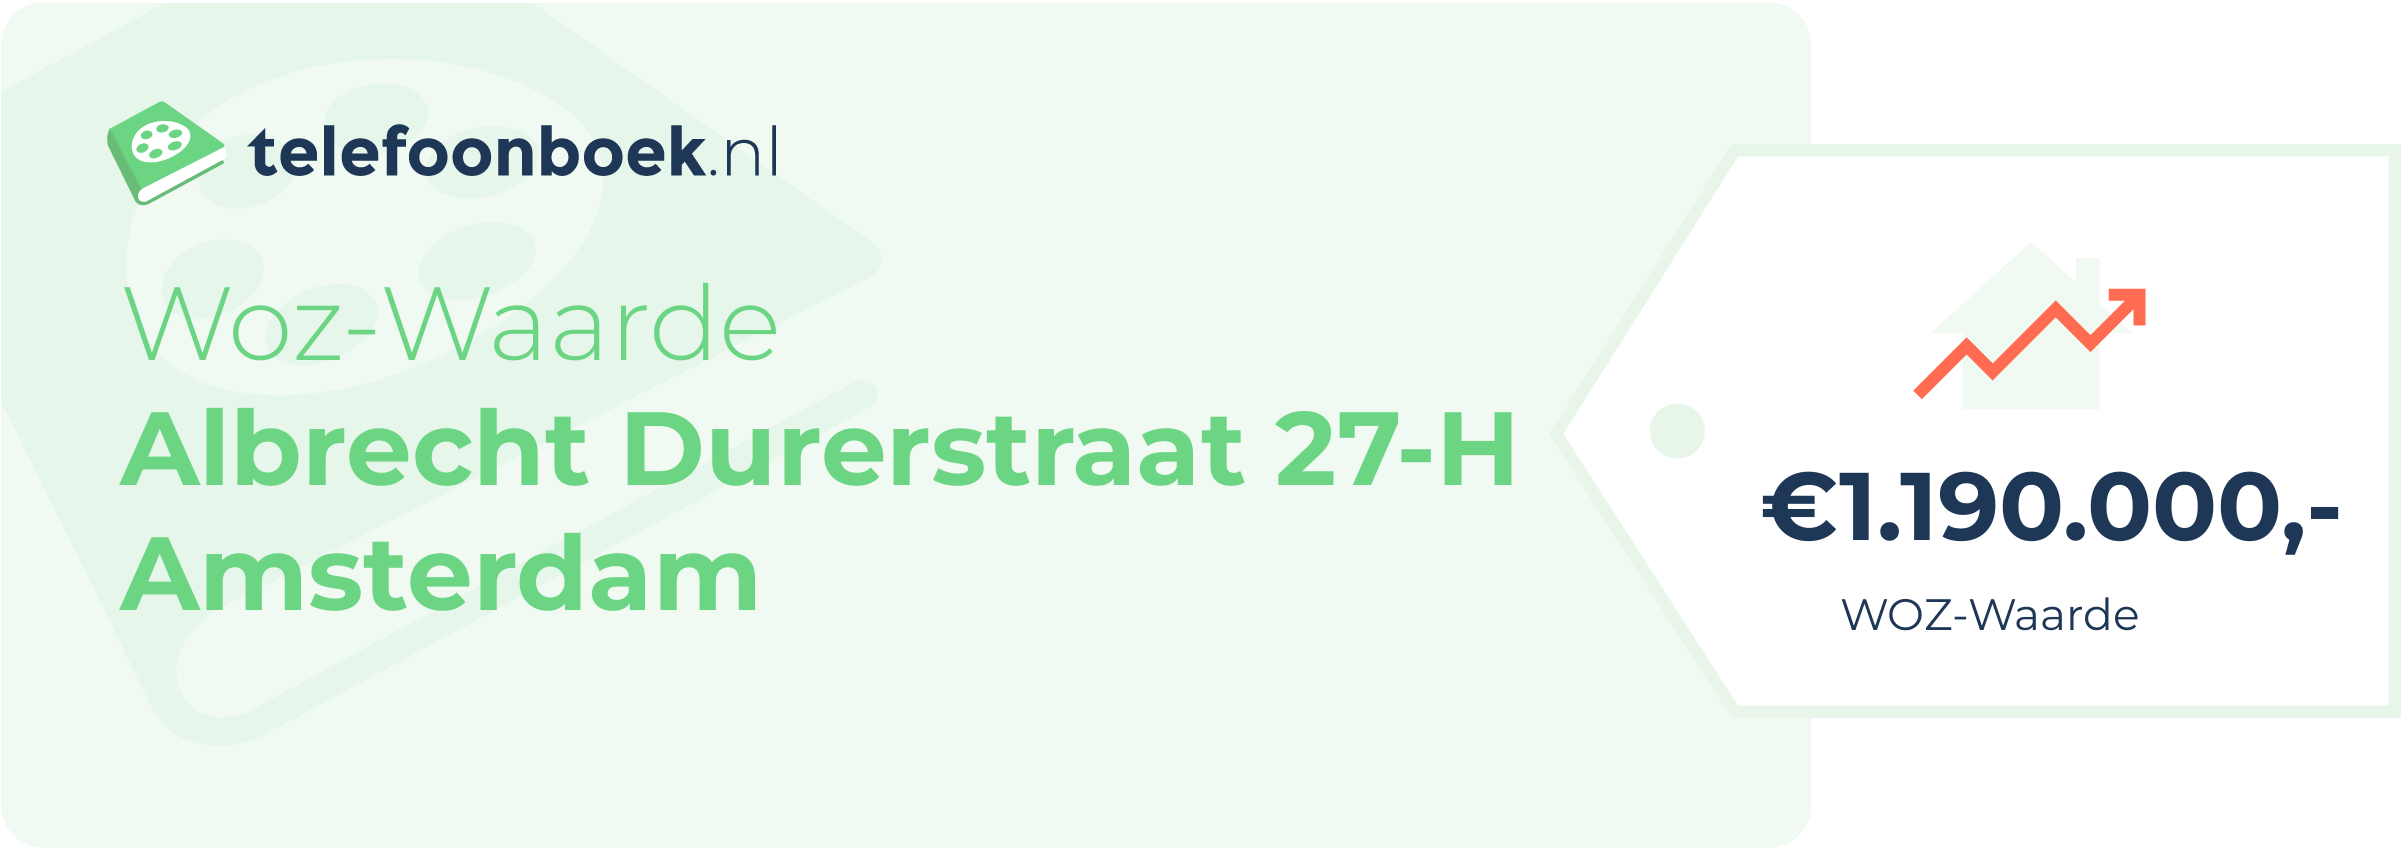 WOZ-waarde Albrecht Durerstraat 27-H Amsterdam